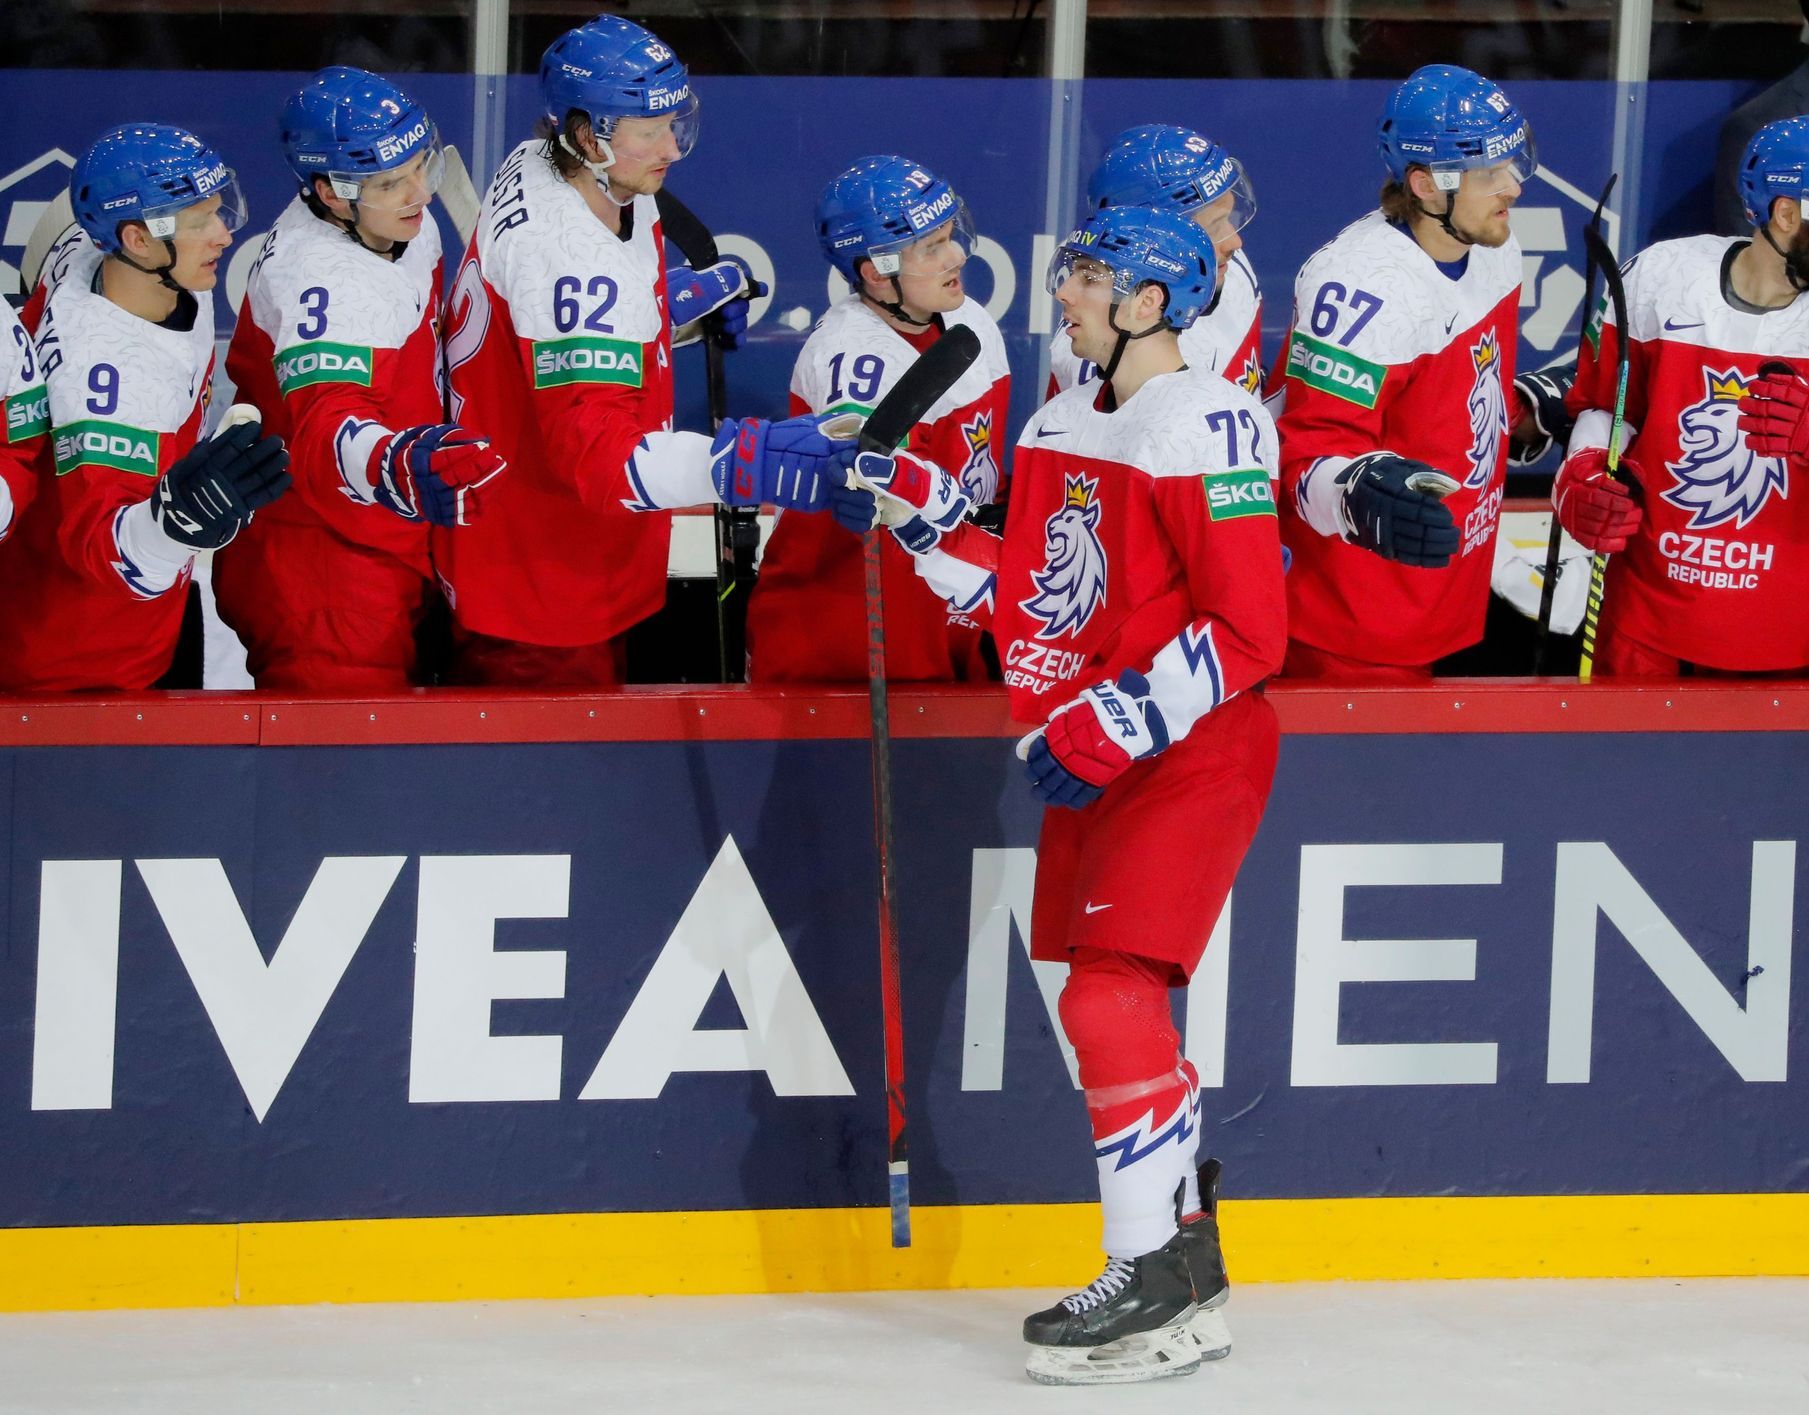 Gli avversari dei giocatori di hockey cechi alla Coppa del Mondo erano l’Austria, non la Bielorussia, che furono eliminati